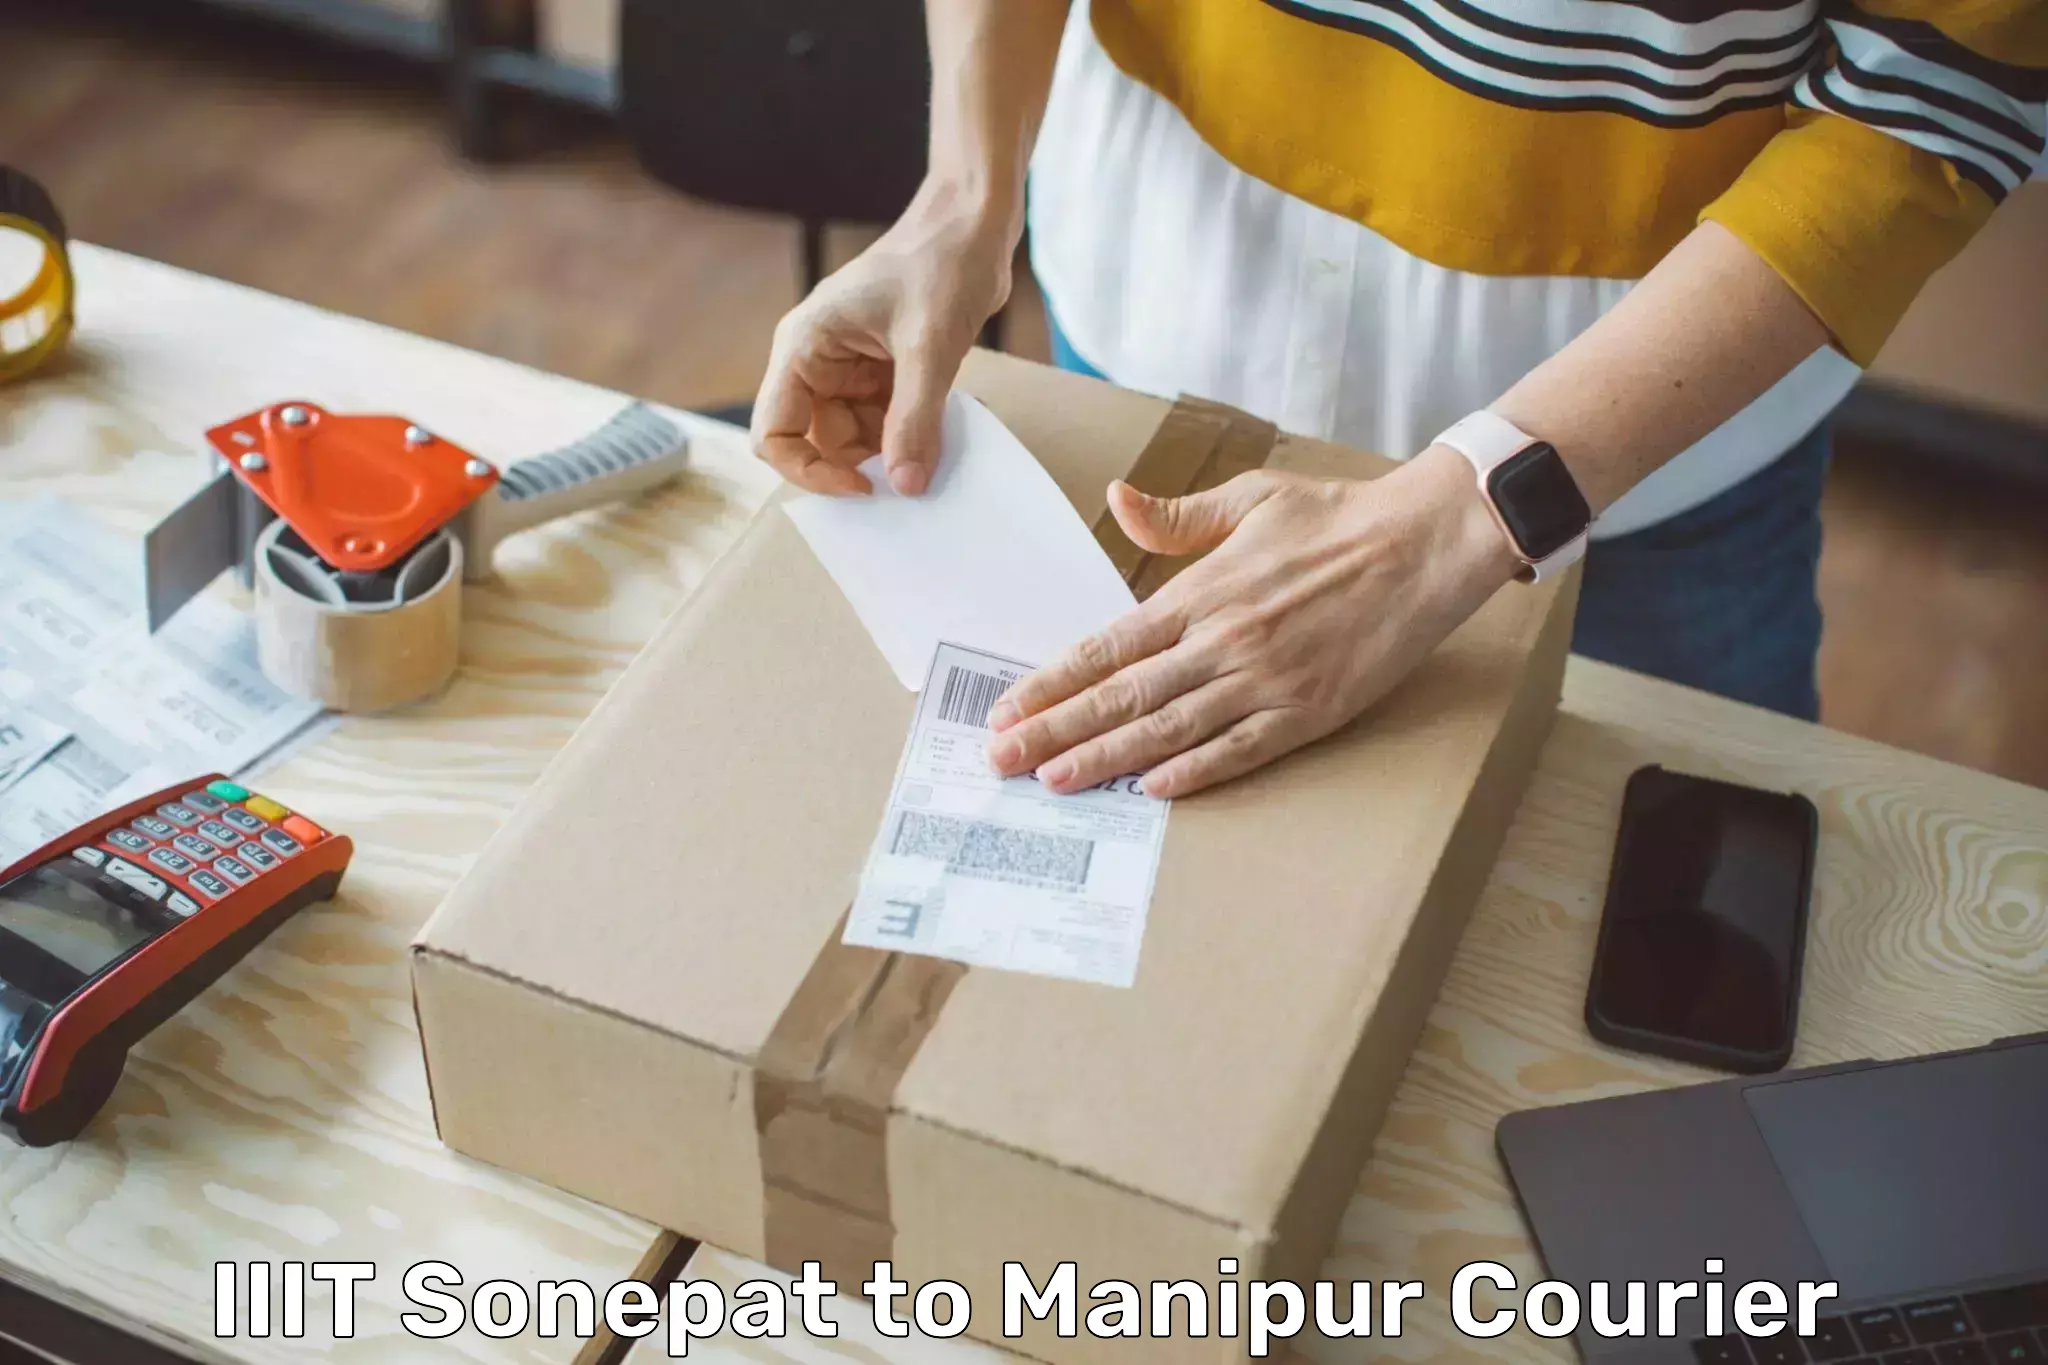 Secure packaging IIIT Sonepat to NIT Manipur